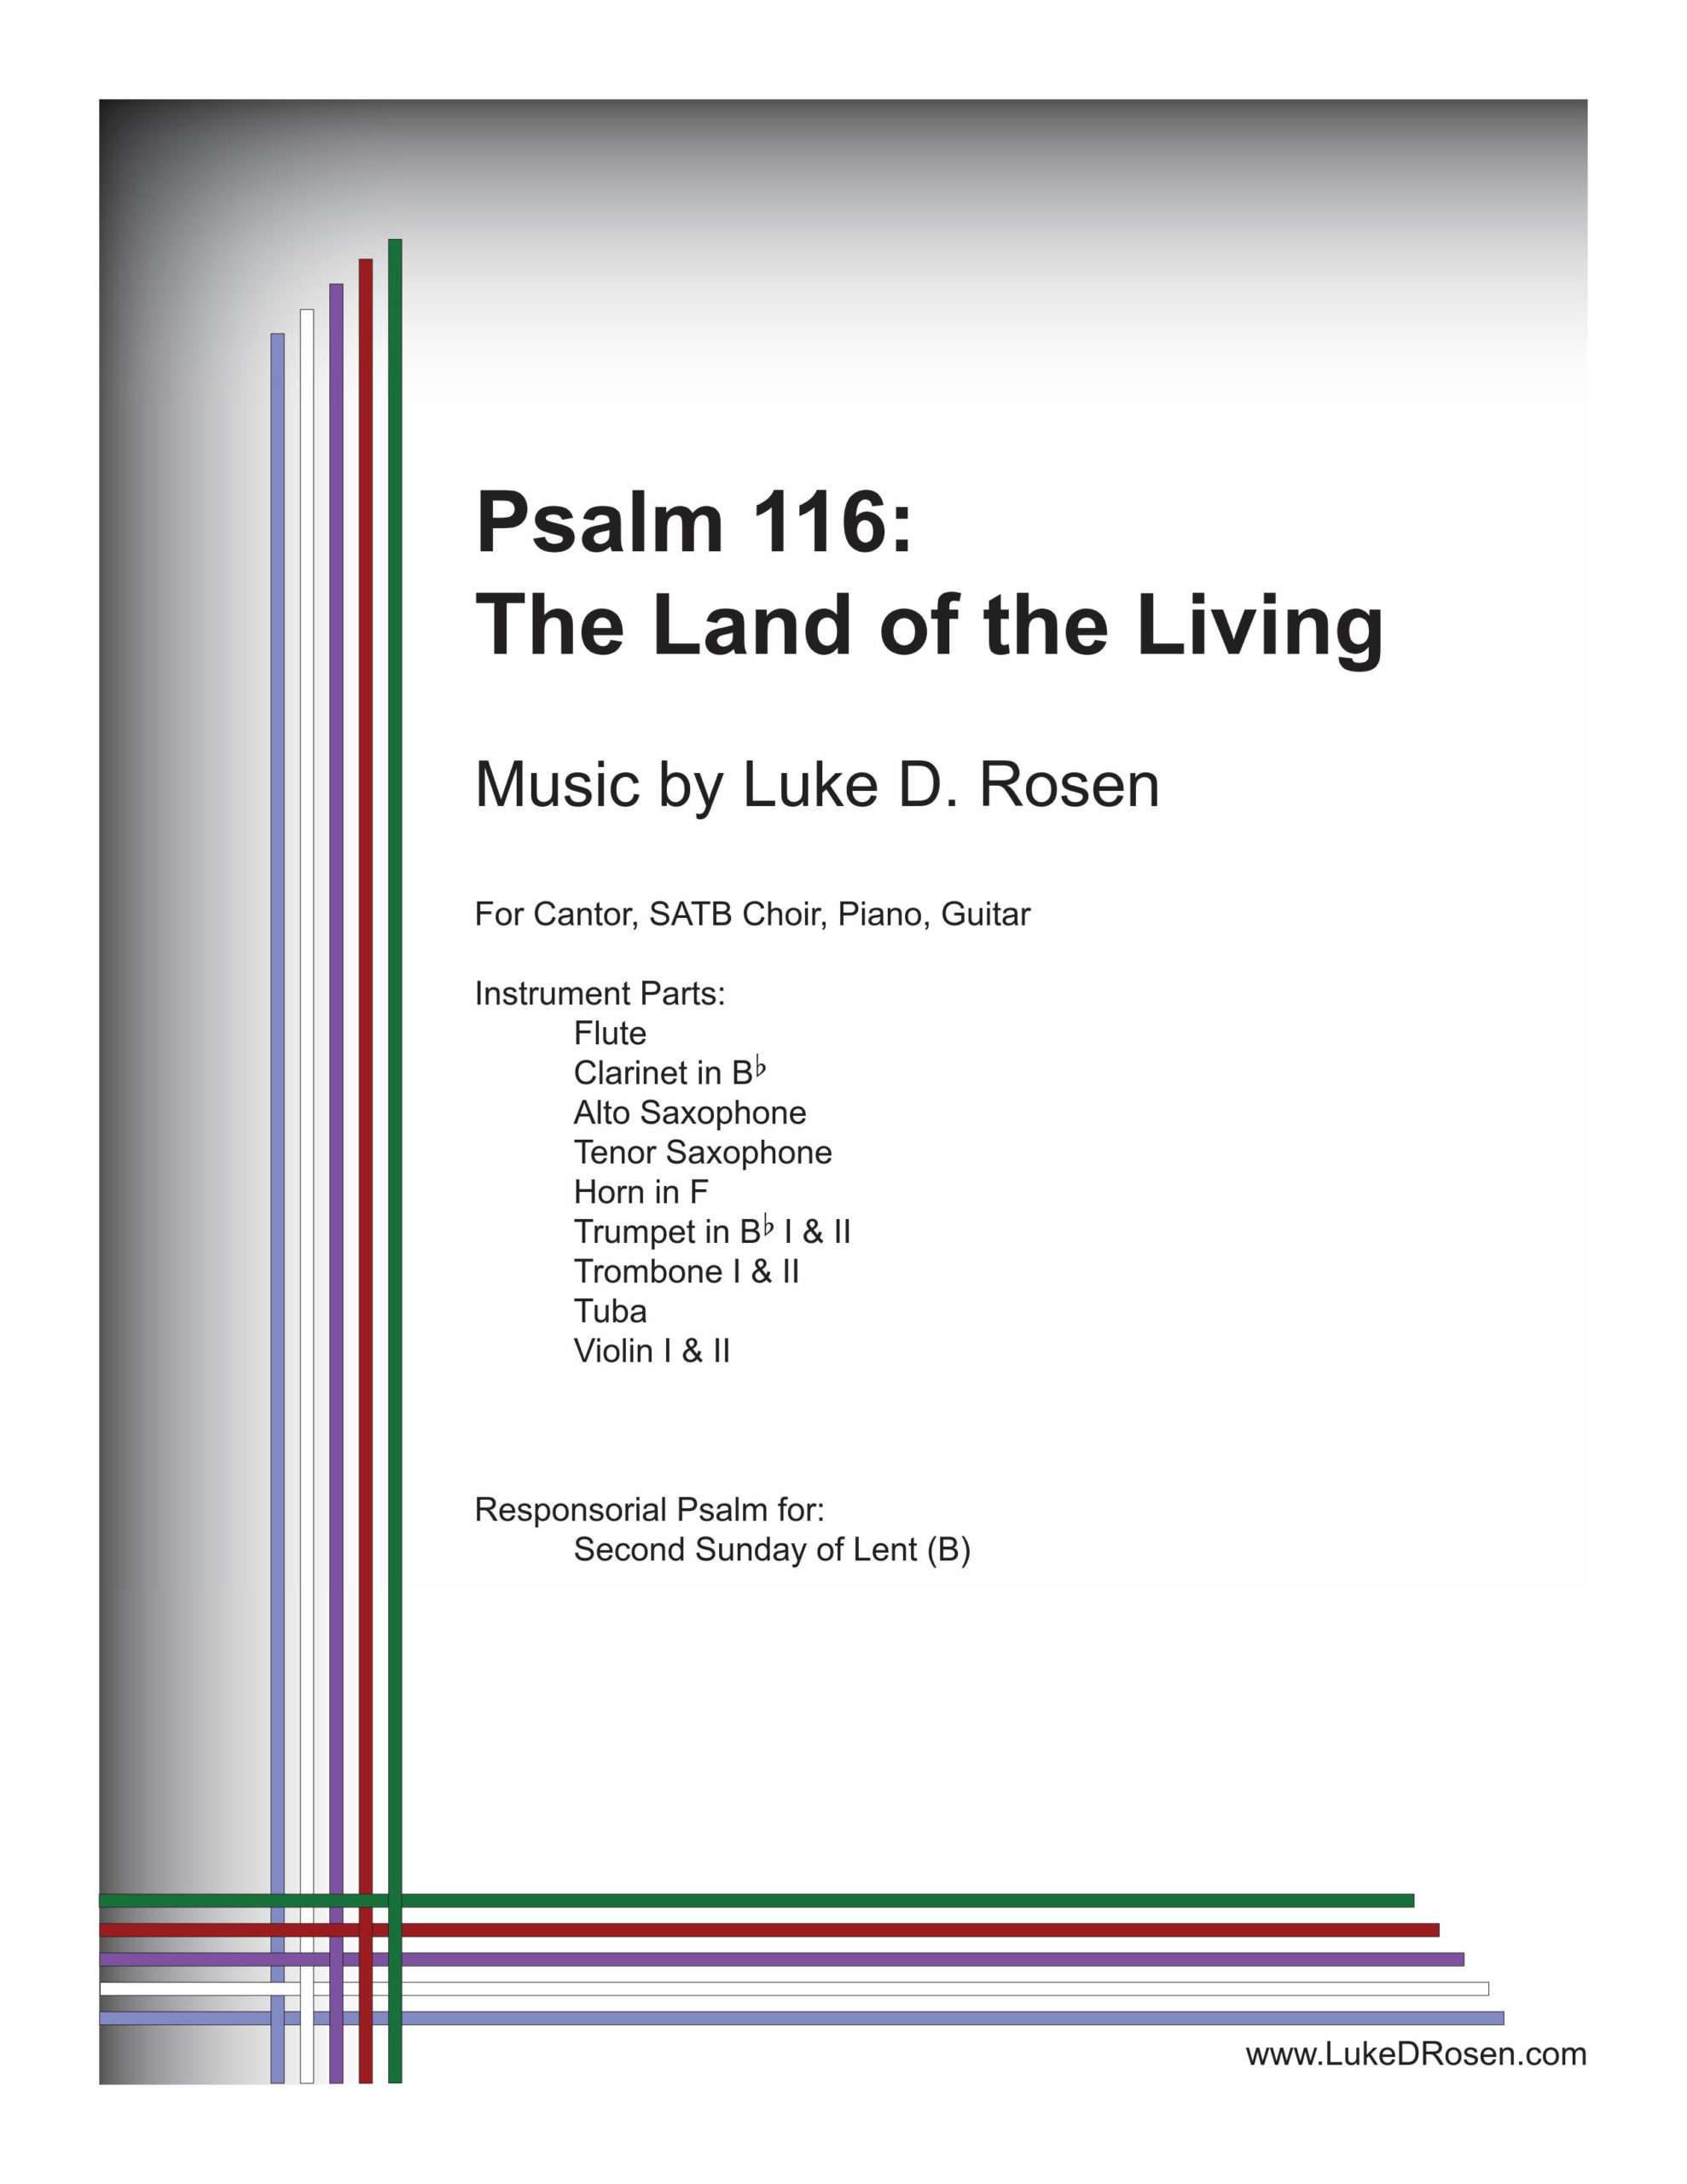 Psalm 116 – The Land of the Living (Rosen)